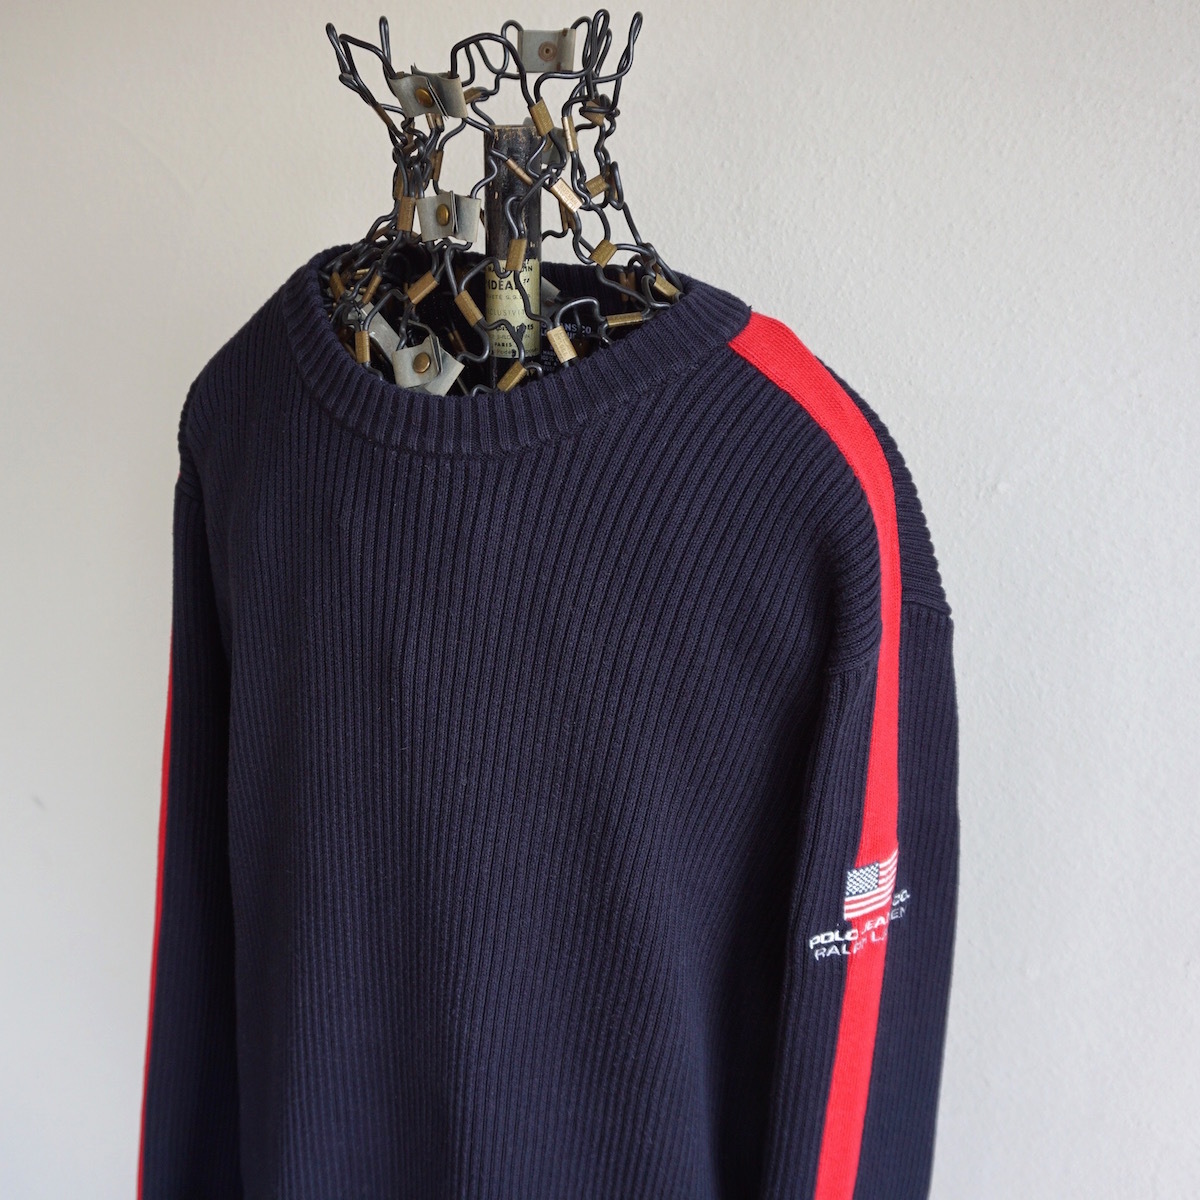 1990s ヴィンテージ POLO JEANS CO. Ralph Lauren 100%コットン リブニットセーター 肩袖ライン L 紺赤 星条旗 ポロジーンズ USA 海外 古着